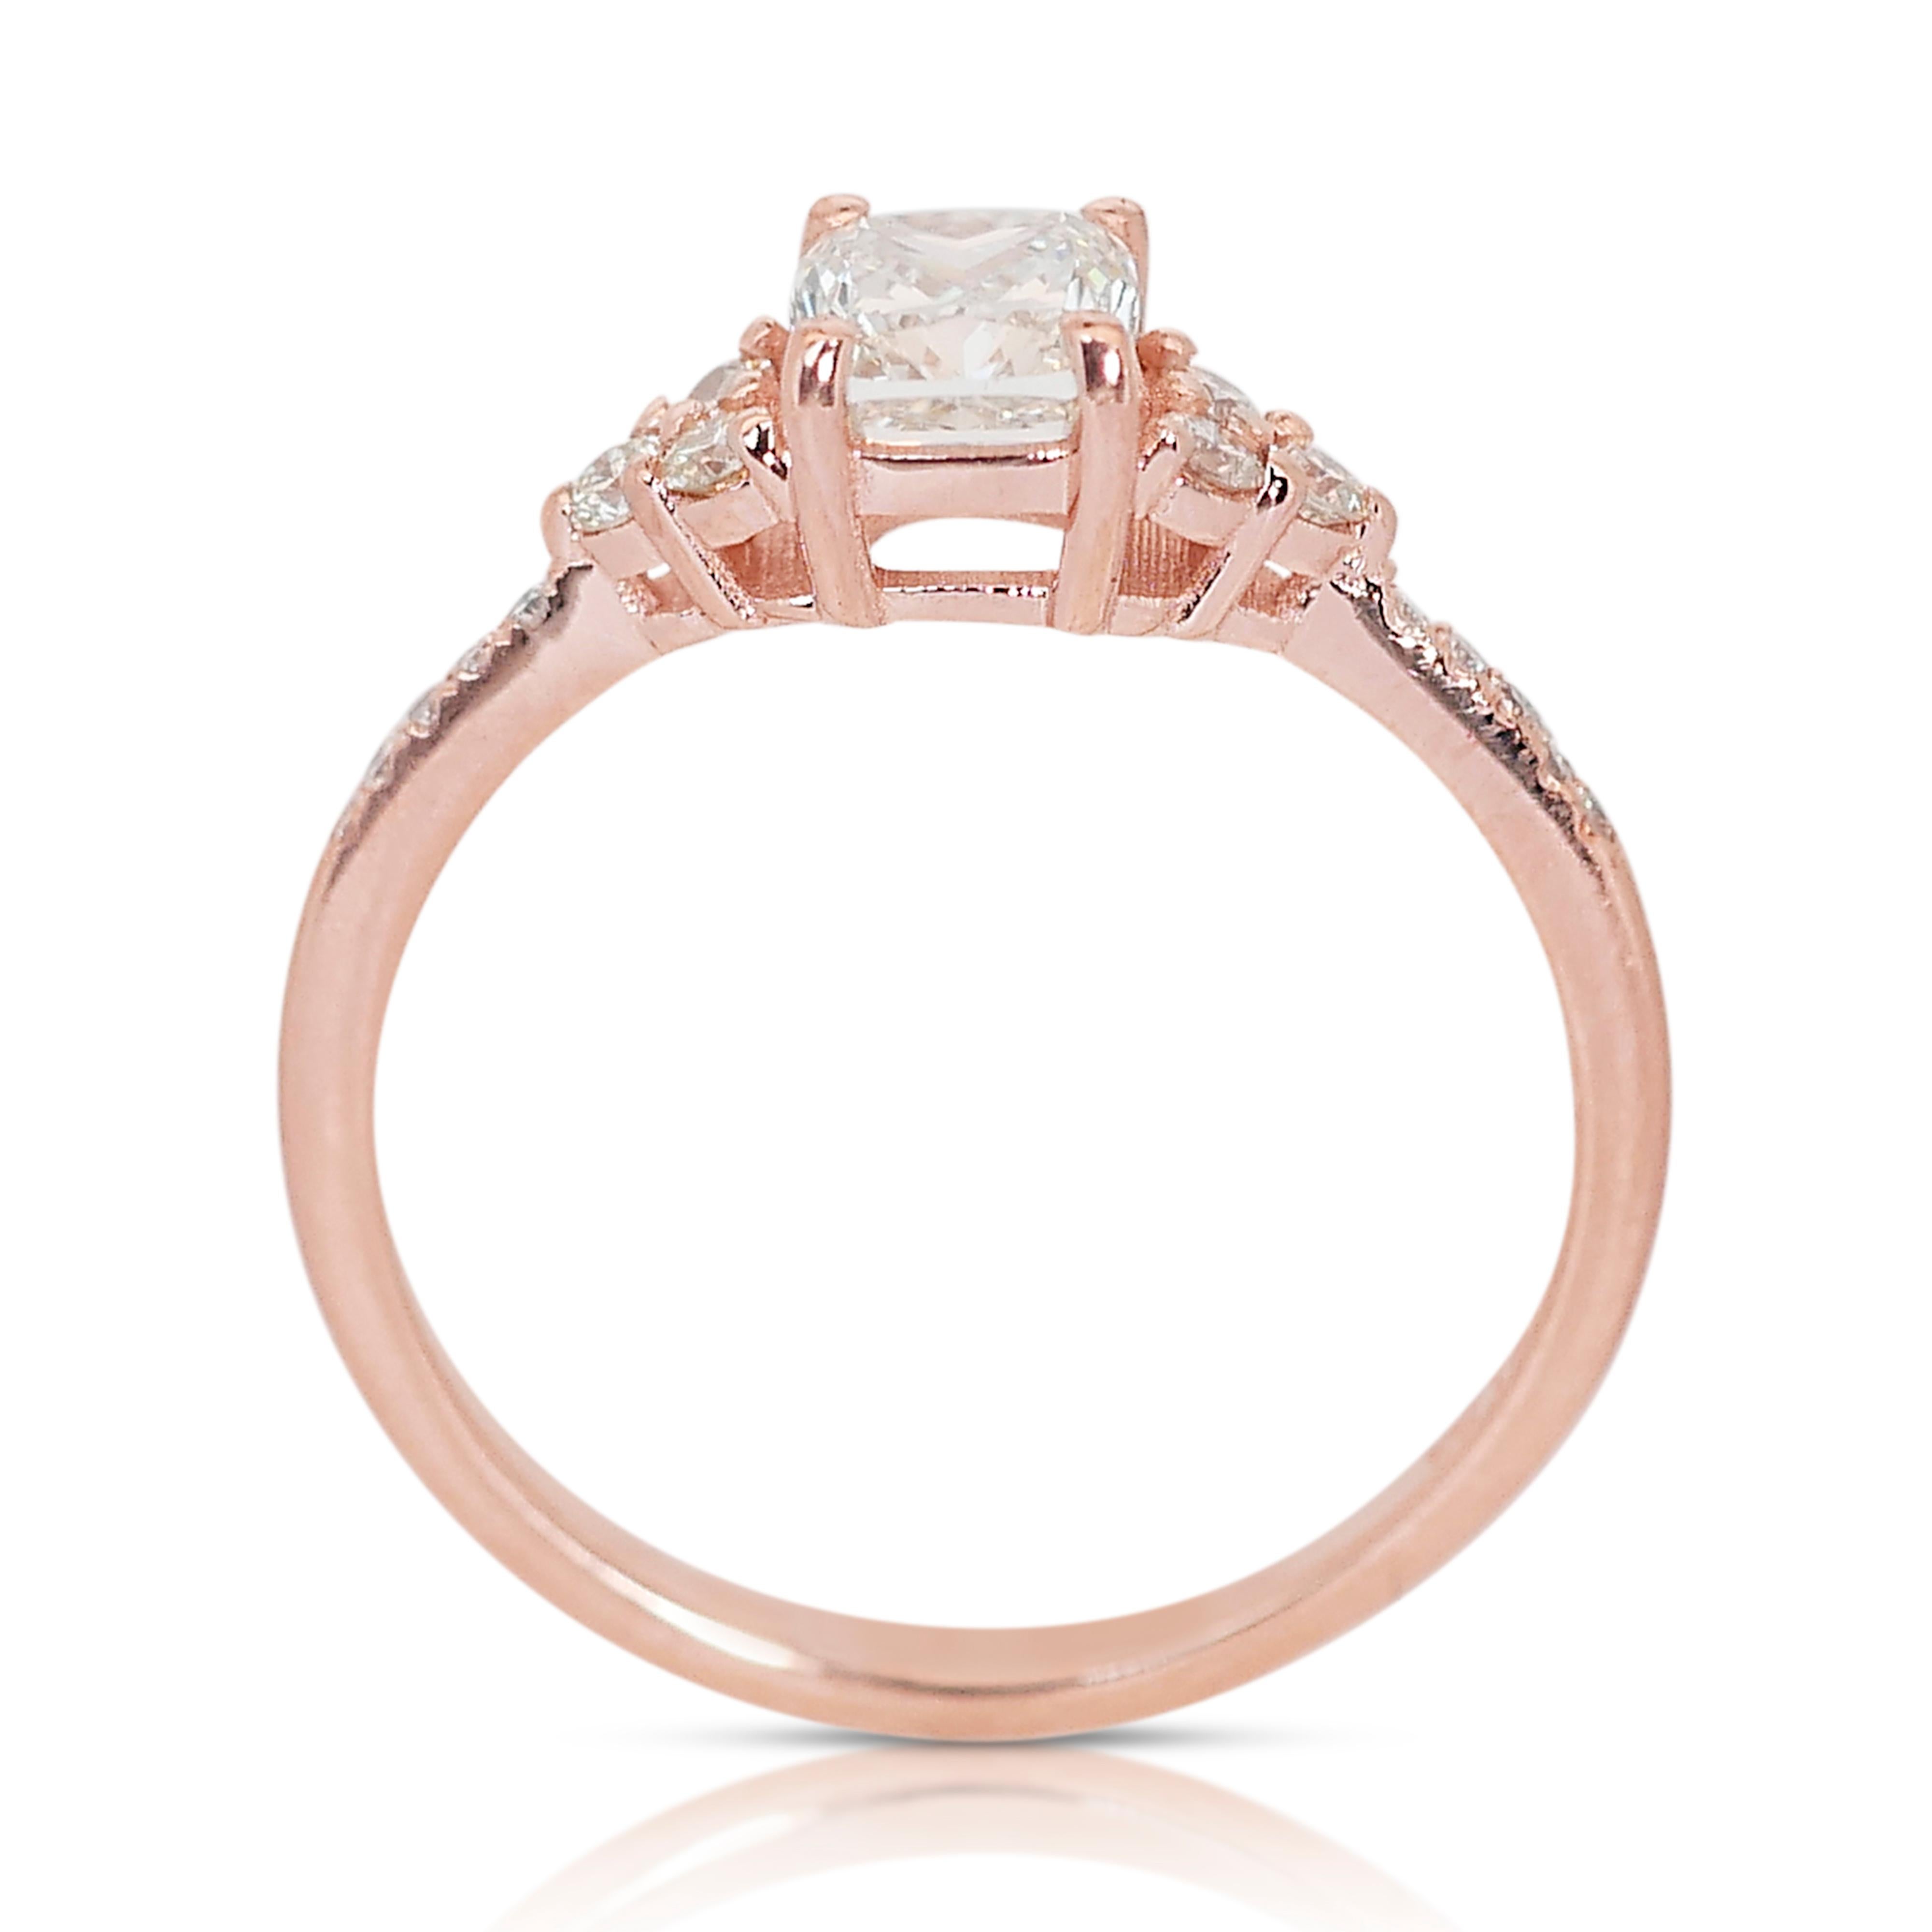  Elegant 14K Rose Gold Natural Diamond Pave Ring w/0.95 ct - IGI Certified 2